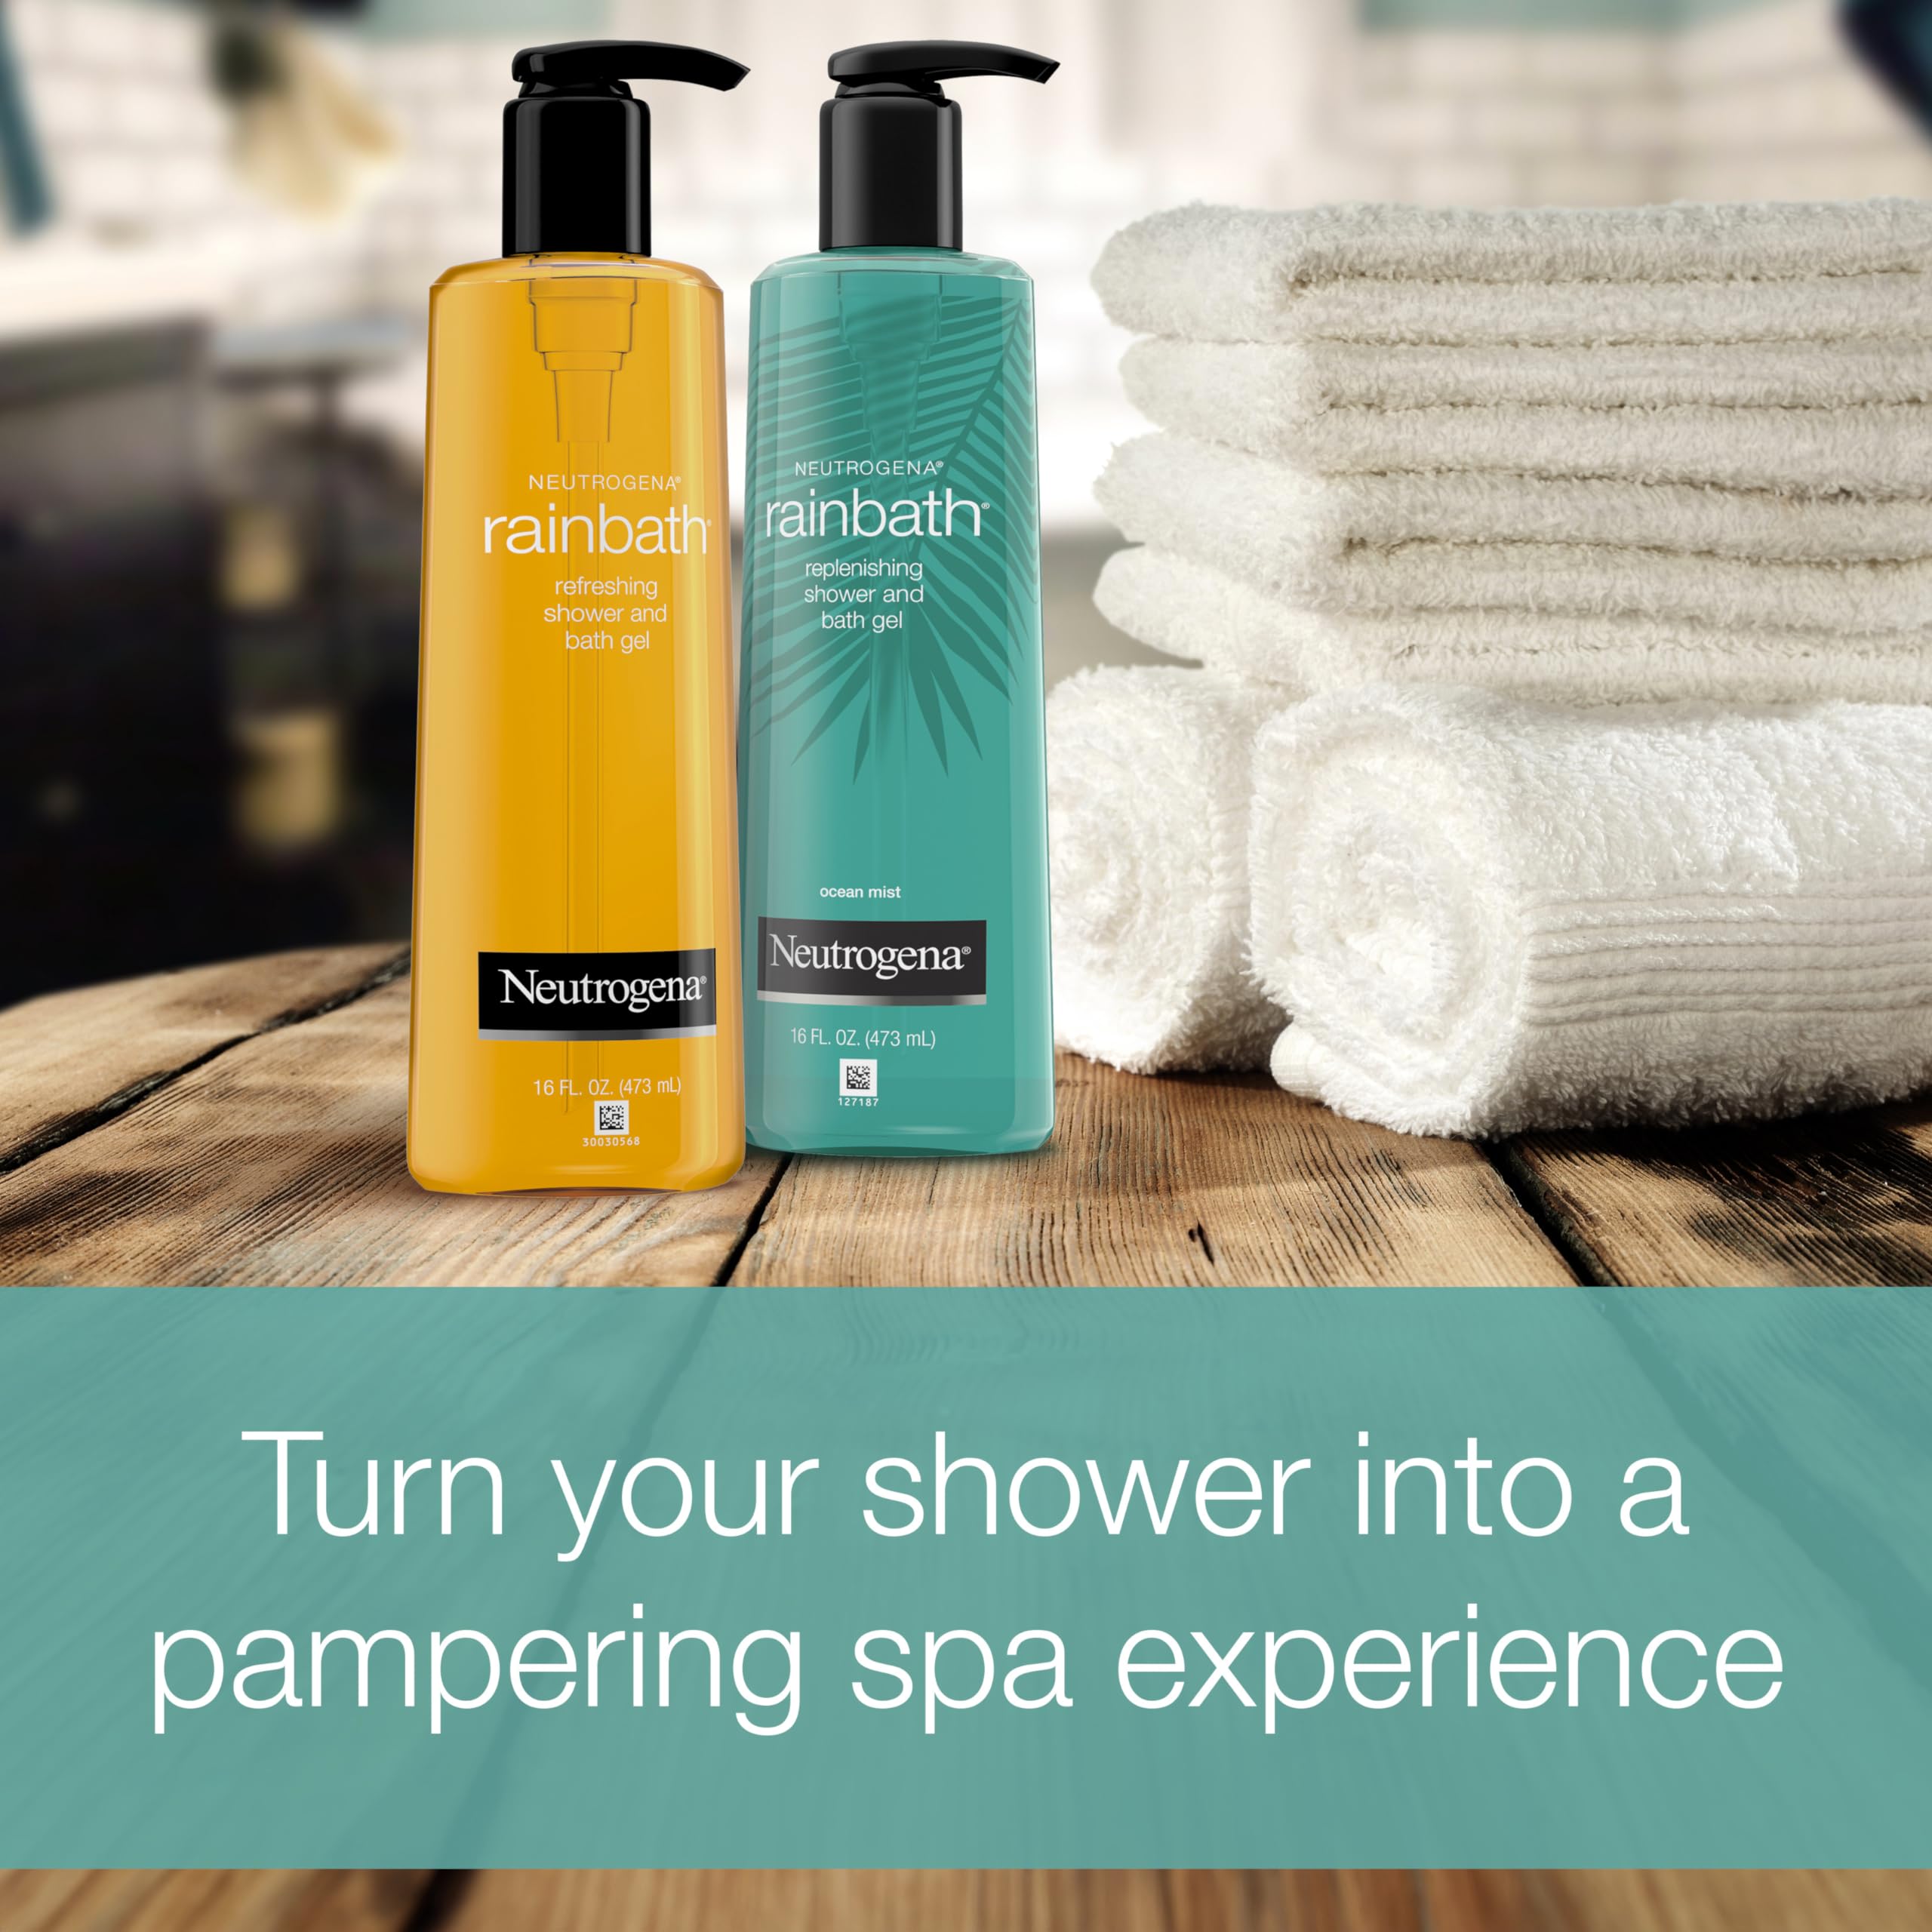 Neutrogena Rainbath Refreshing & Cleansing Shower & Bath Gel, Moisturizing Daily Body Wash & Shaving Gel for Soft Skin, Two Pack Including Ocean Mist & Original Scents, 2 x 16 fl. oz